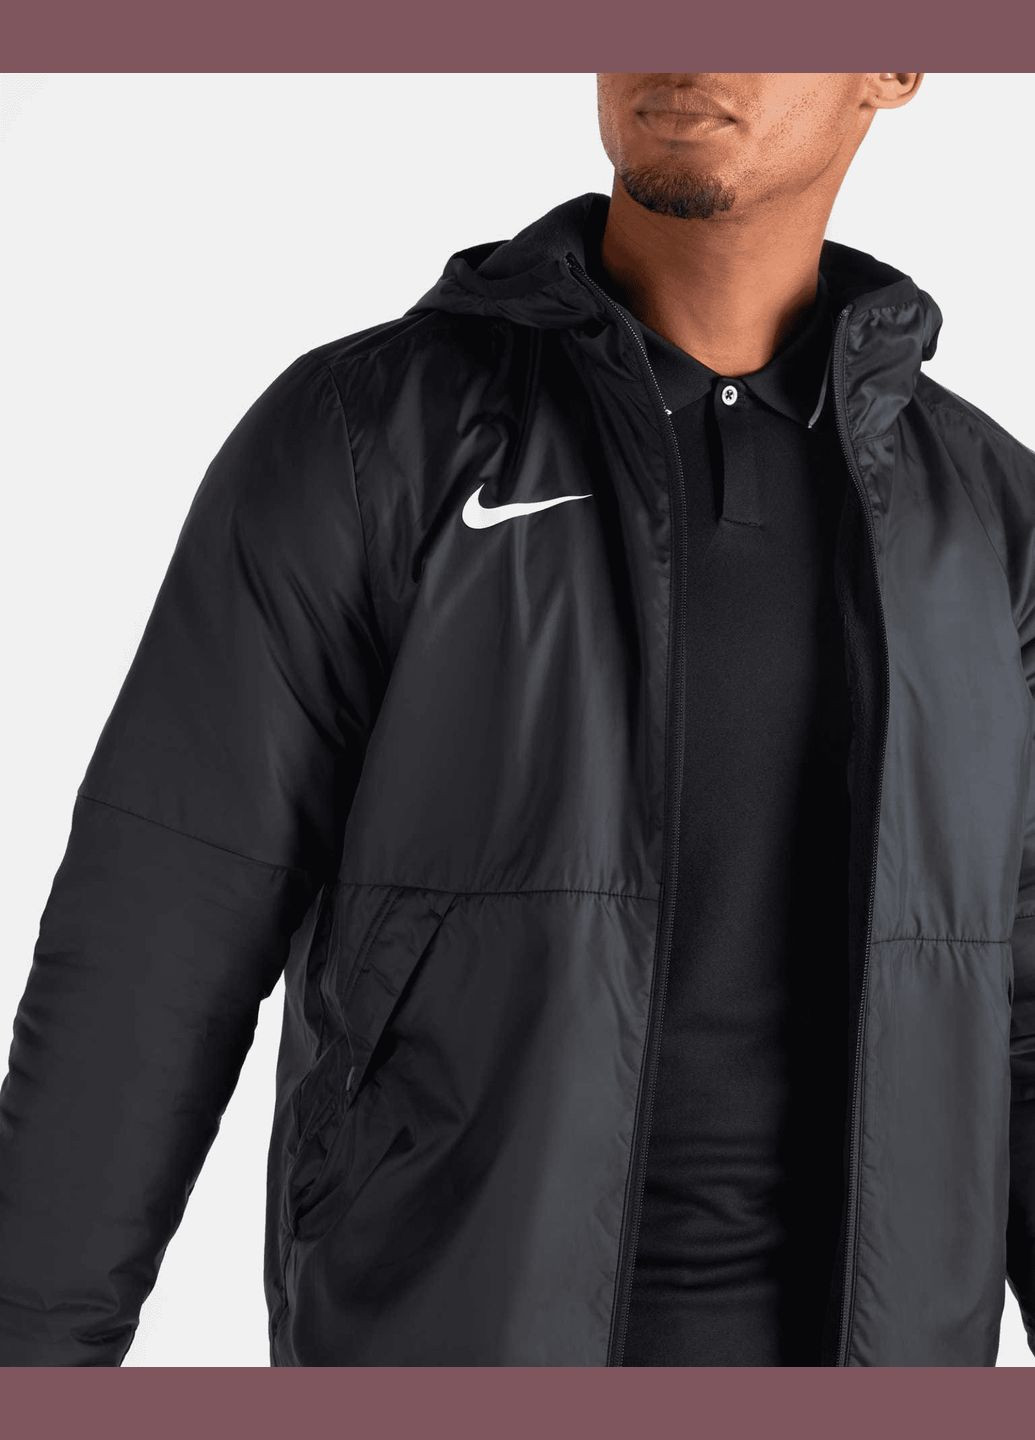 Чорна демісезонна куртка (вітровка) чоловіча fall jacket park 20 cw6157010 весна-осінь чорна Nike